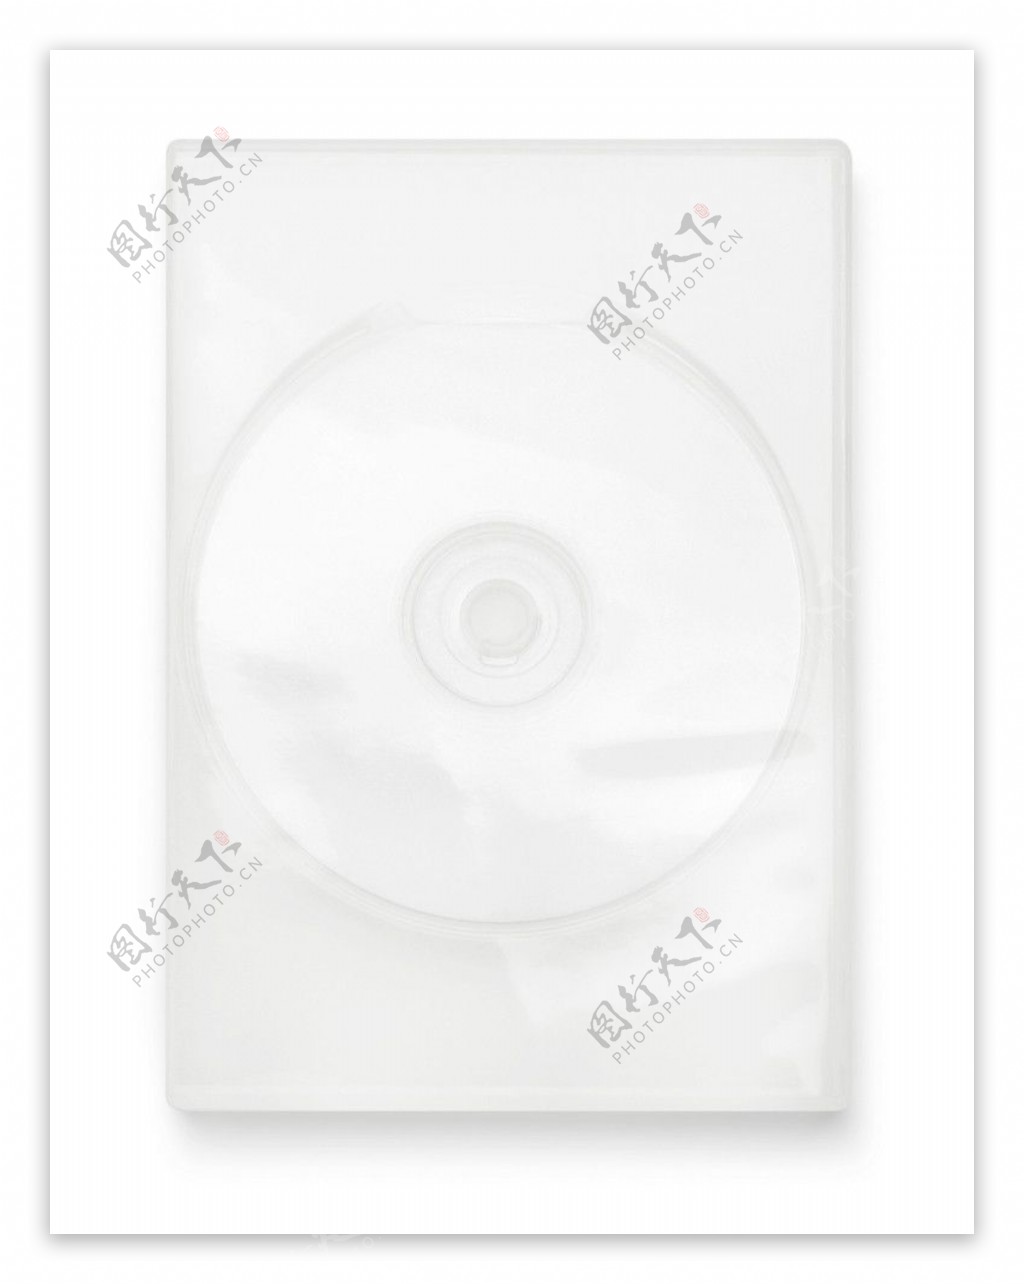 空白DVD图片